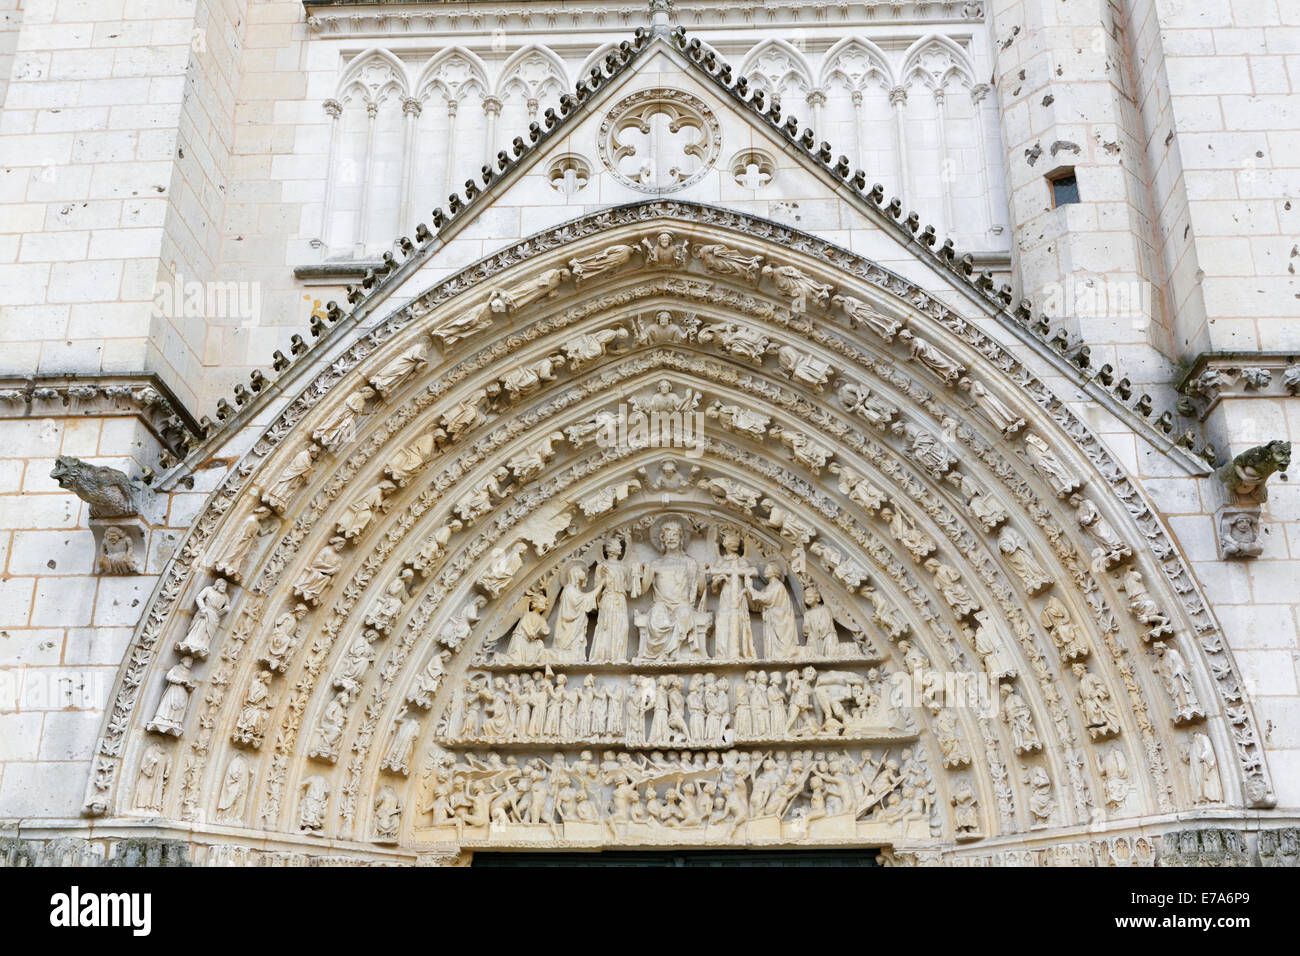 Cathédrale Saint-Pierre de Poitiers, or Poitiers Cathedral, great west door, detail, Poitiers, Vienne, Poitou-Charentes, France Stock Photo